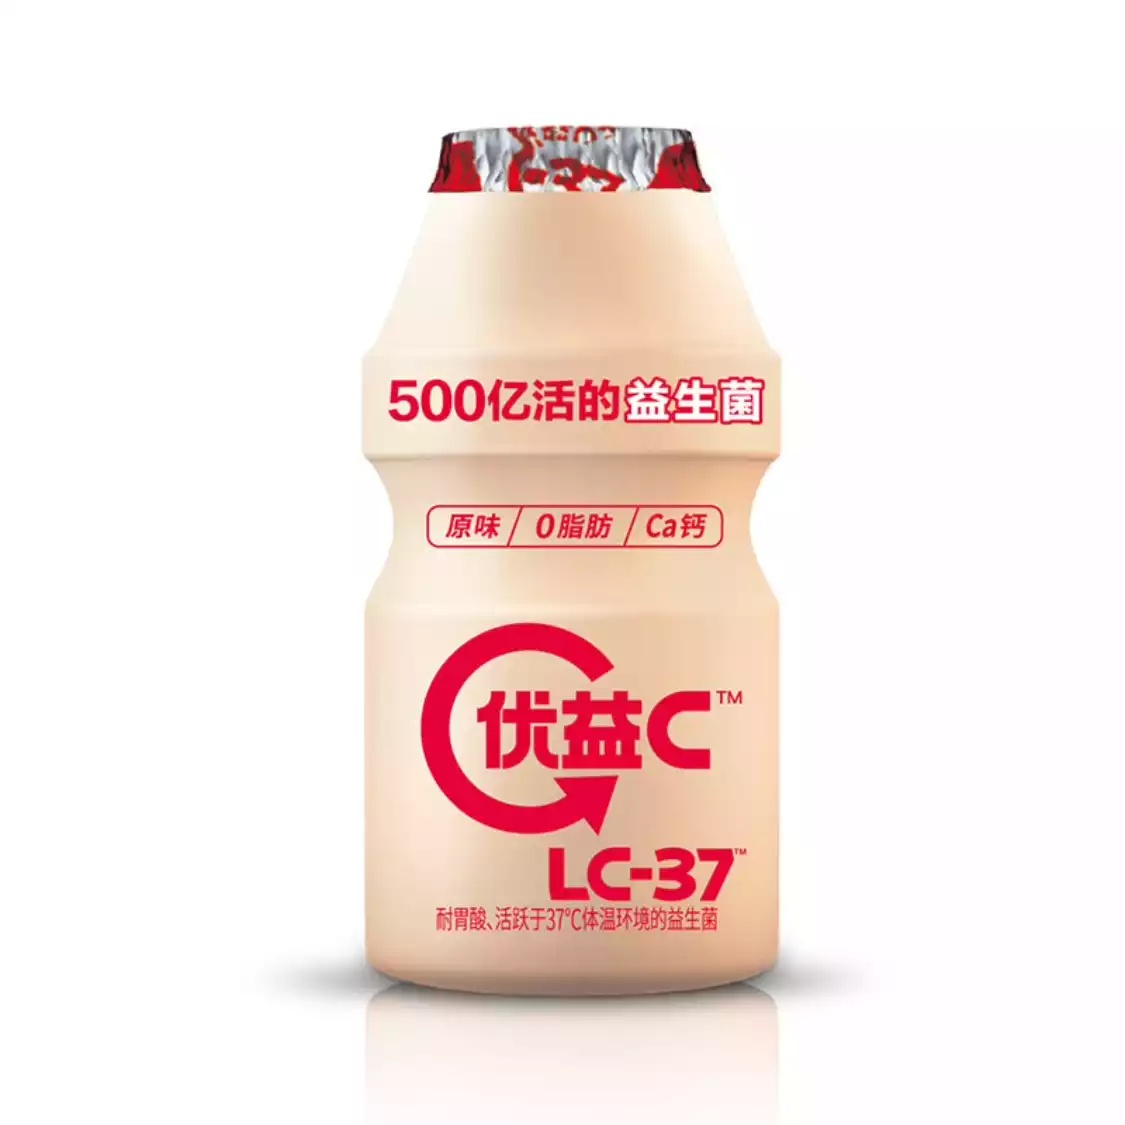 中国酸奶大战-FoodTalks全球食品资讯